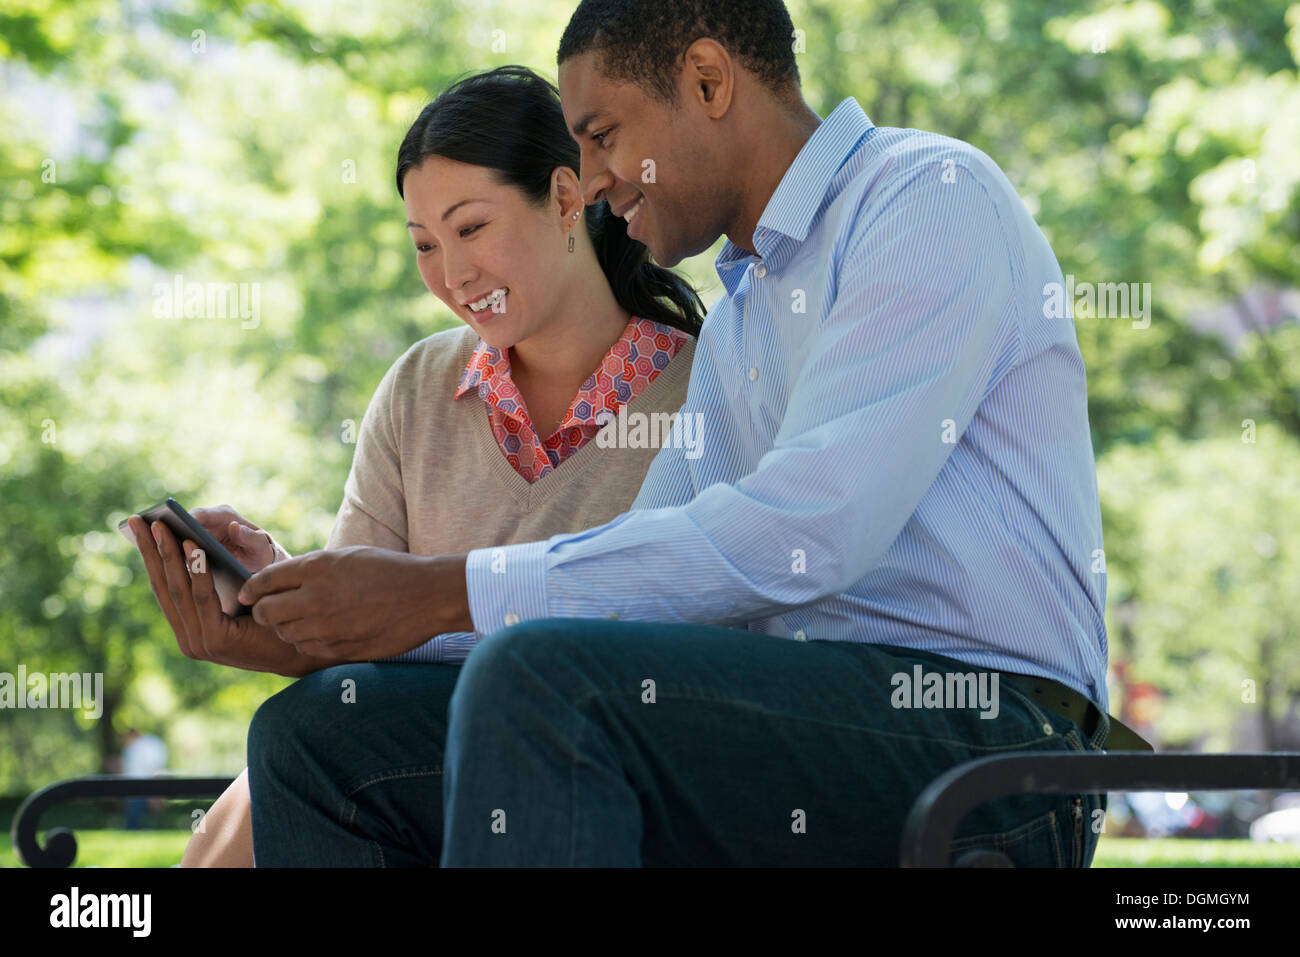 L'été. Les gens d'affaires. Un homme et une femme assis sur un banc, à l'aide d'un téléphone intelligent. Banque D'Images